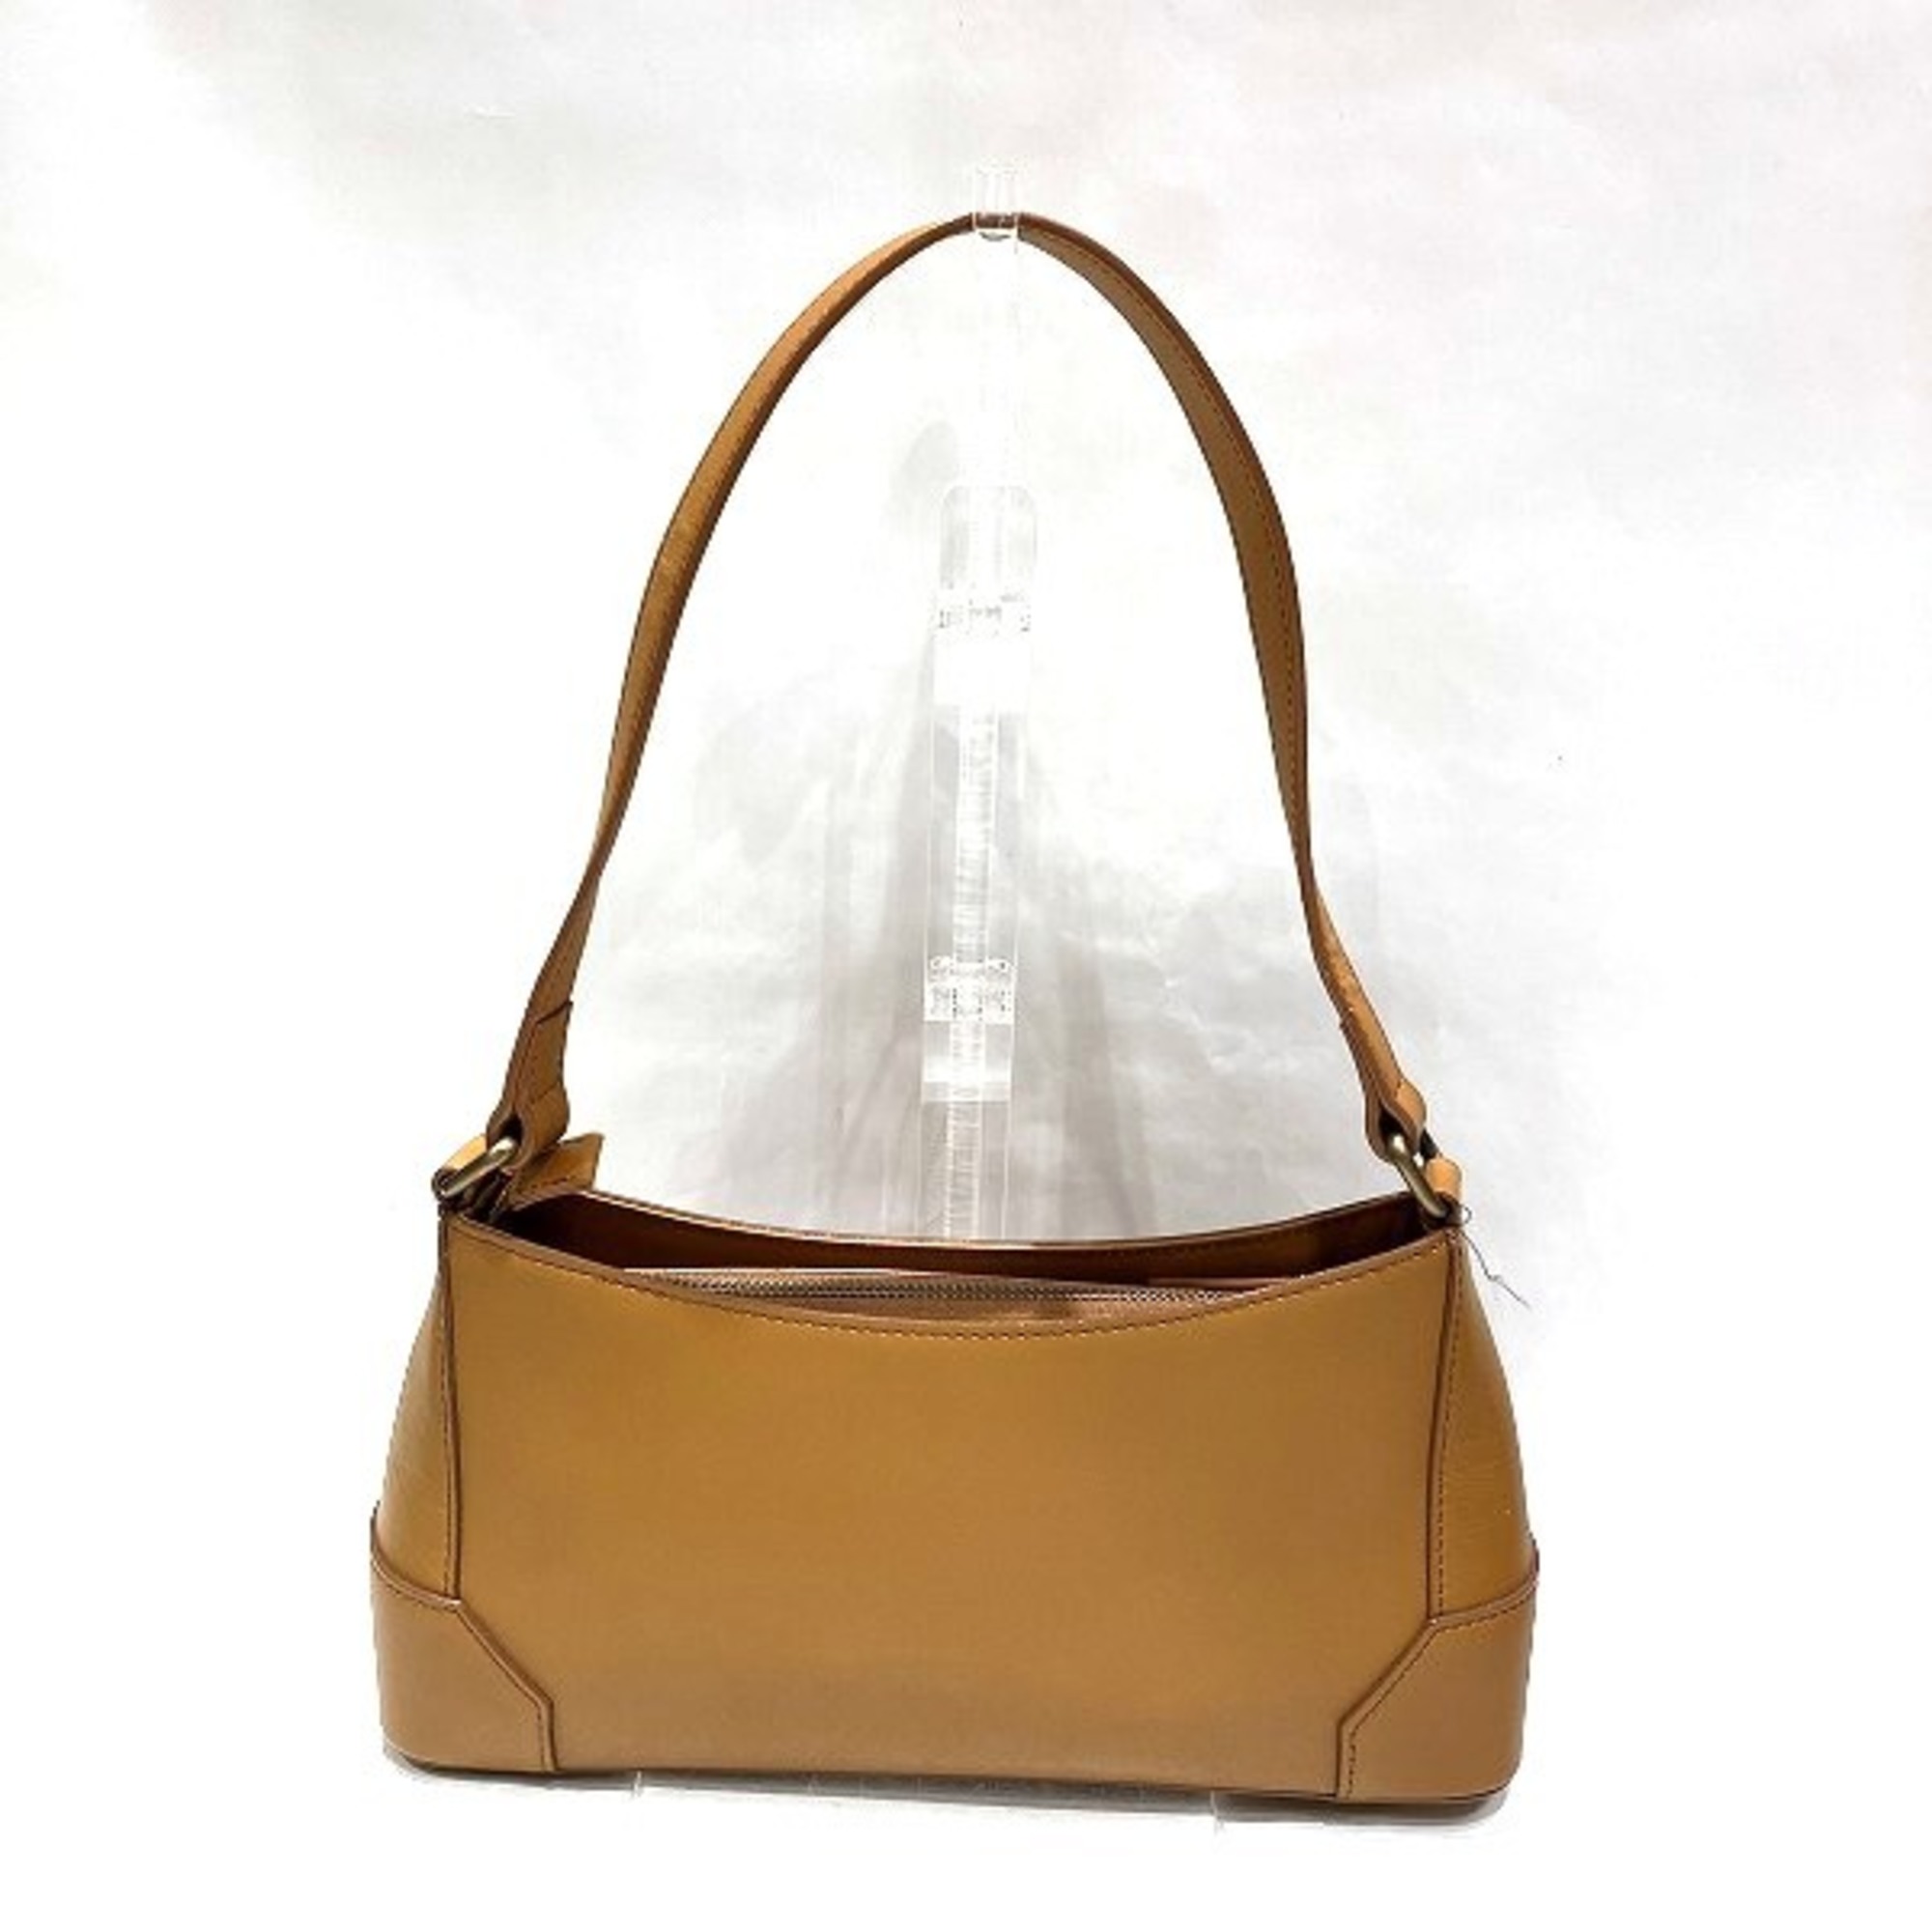 Burberry Leather Bag One Shoulder Handbag Ladies